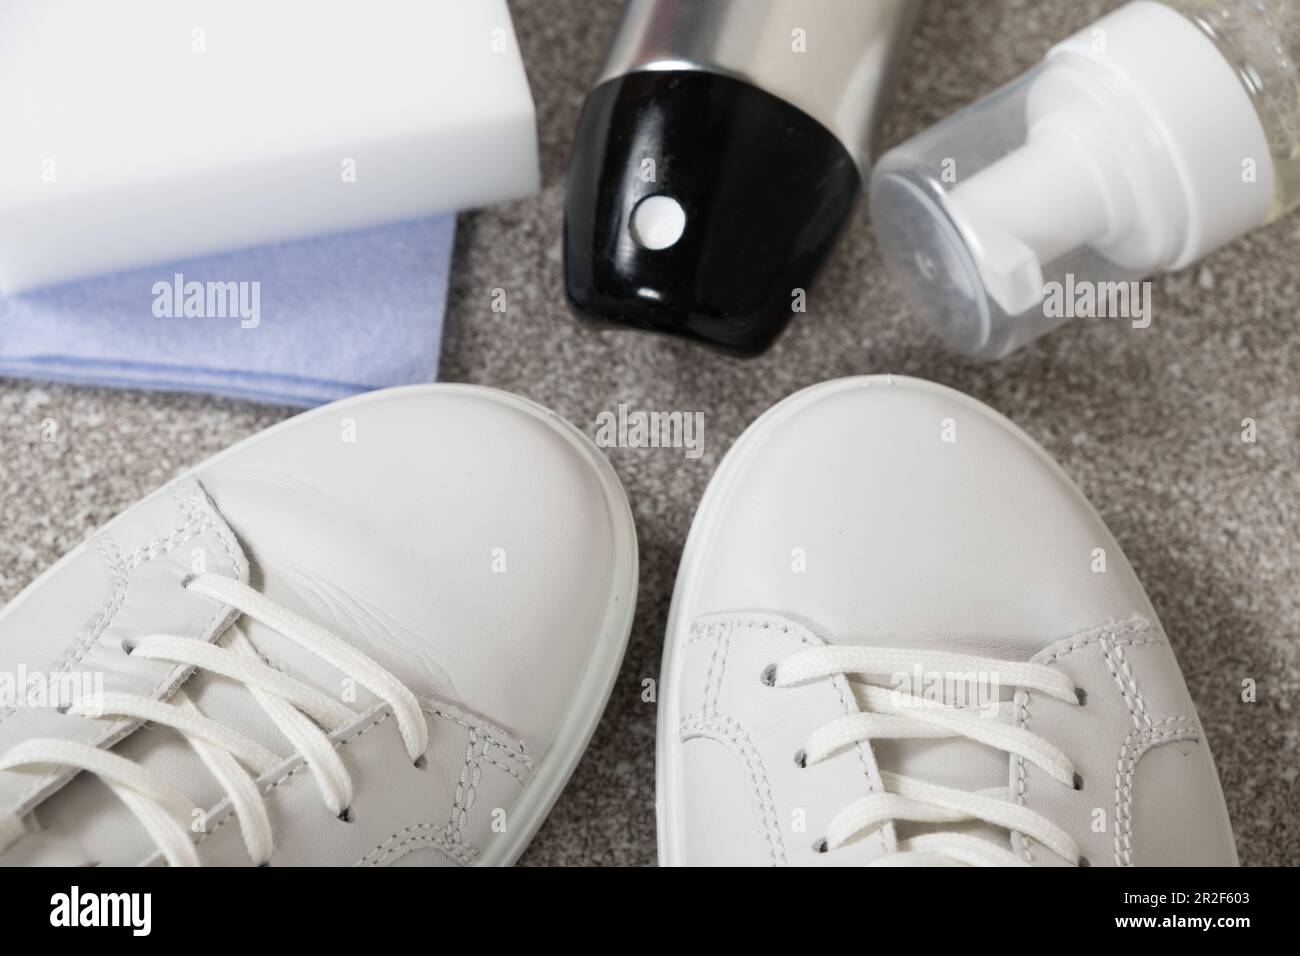 https://c8.alamy.com/compes/2r2f603/kit-de-limpieza-de-zapatos-de-cuero-blanco-spray-repelente-al-agua-espuma-trapo-y-esponja-2r2f603.jpg